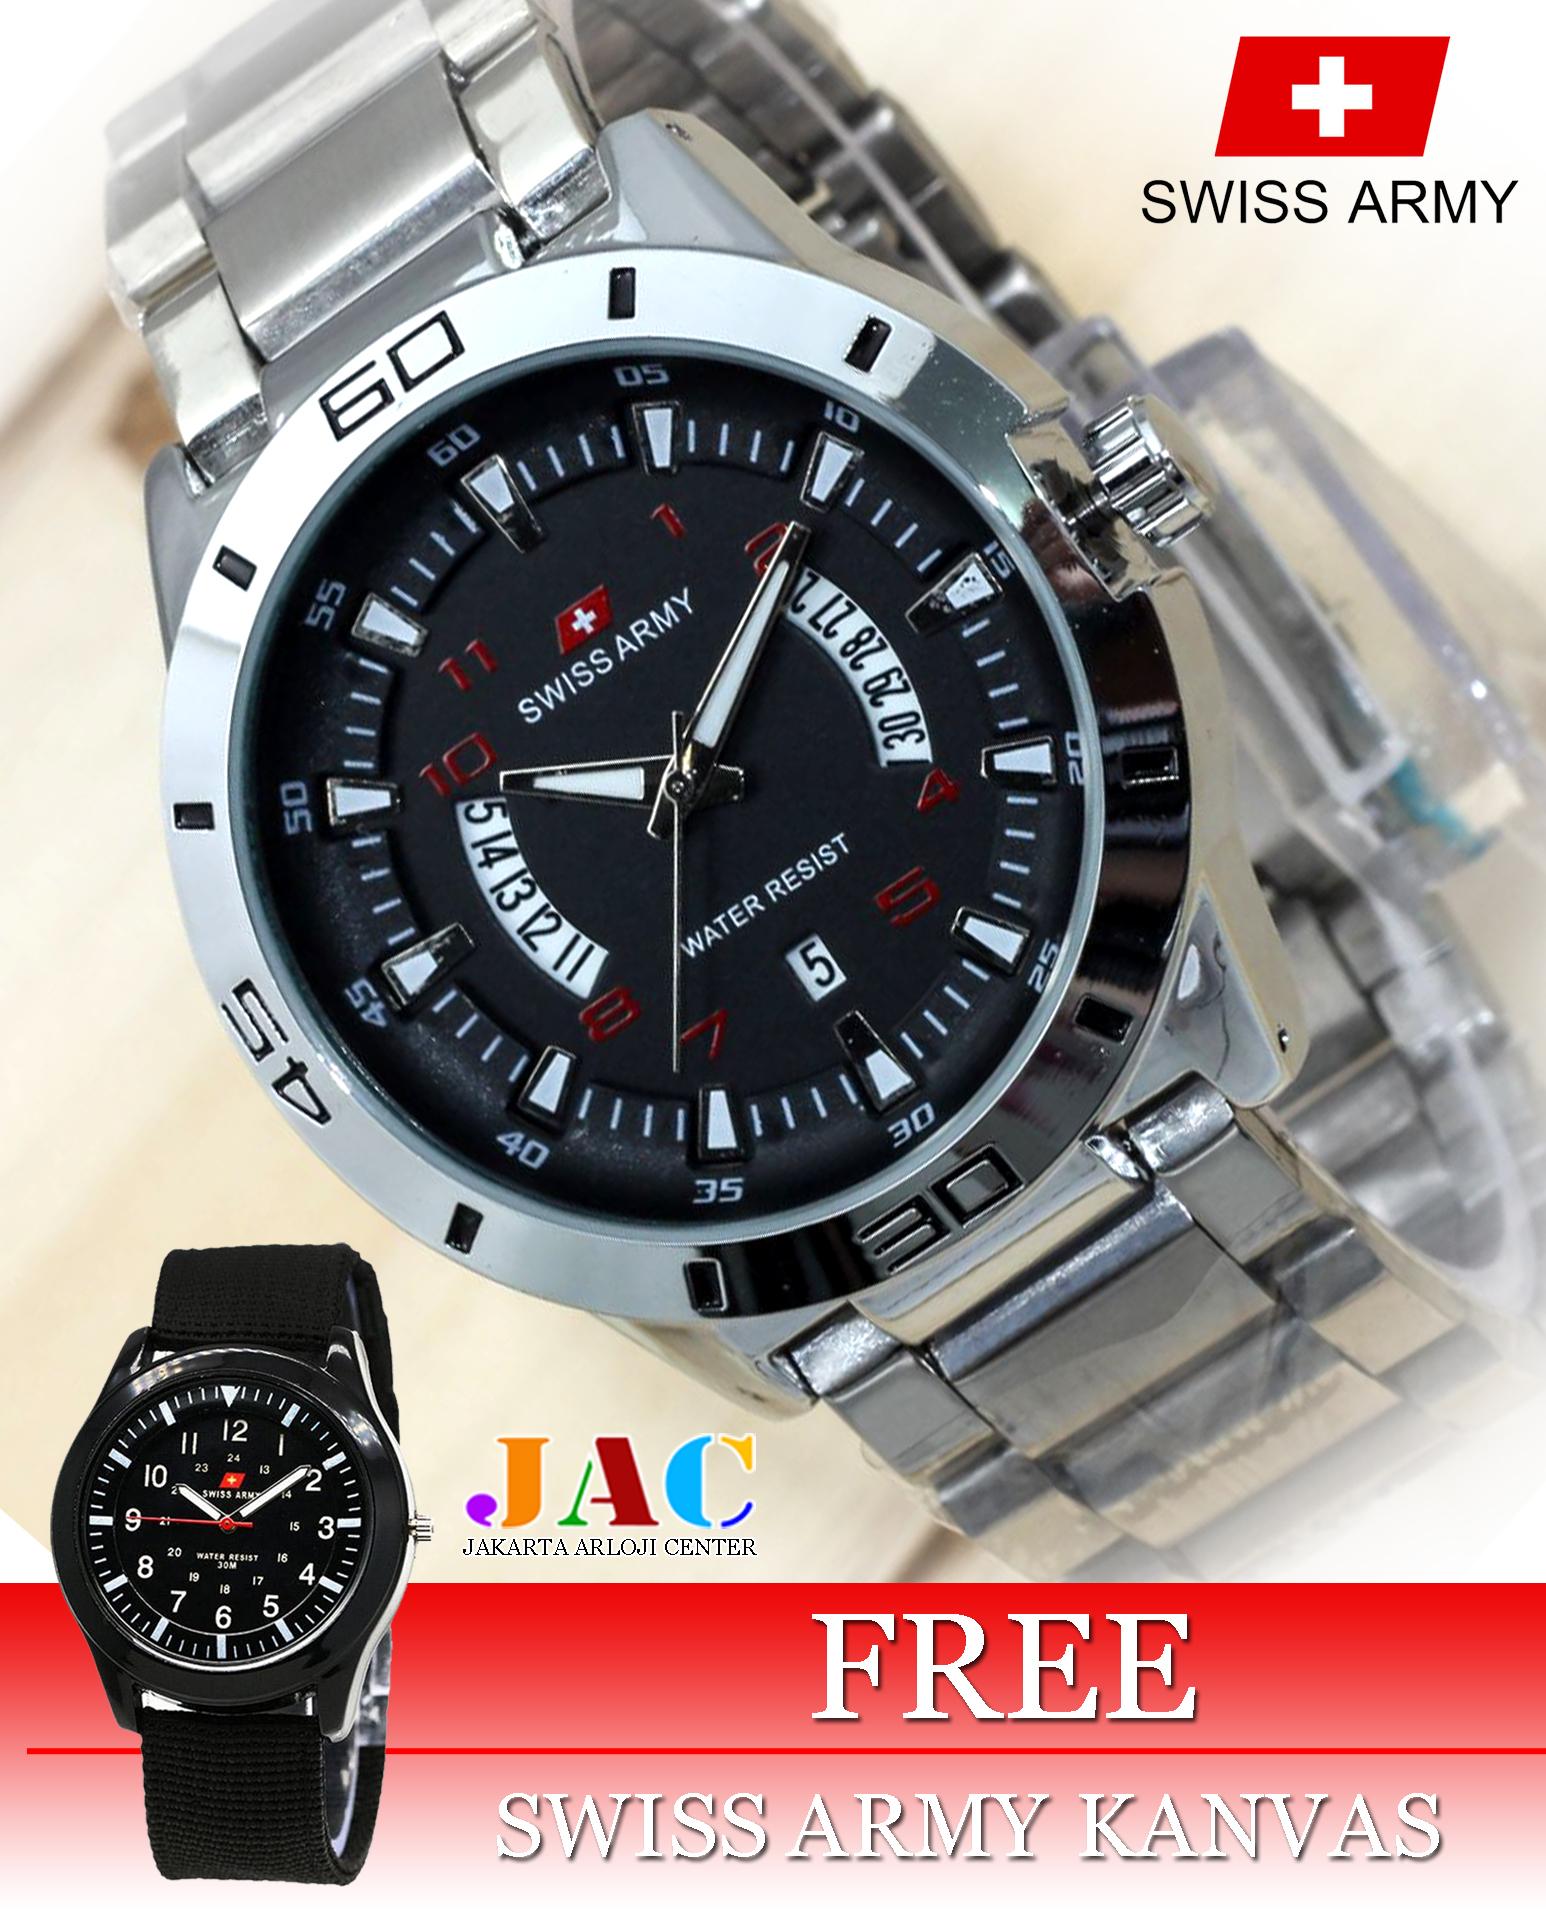 Jam Tangan Swiss Army Pria - Original - Stainless Steel - Tanggal Dan Hari Aktif - Formal Design - Bonus Jam Tangan Kanvas 